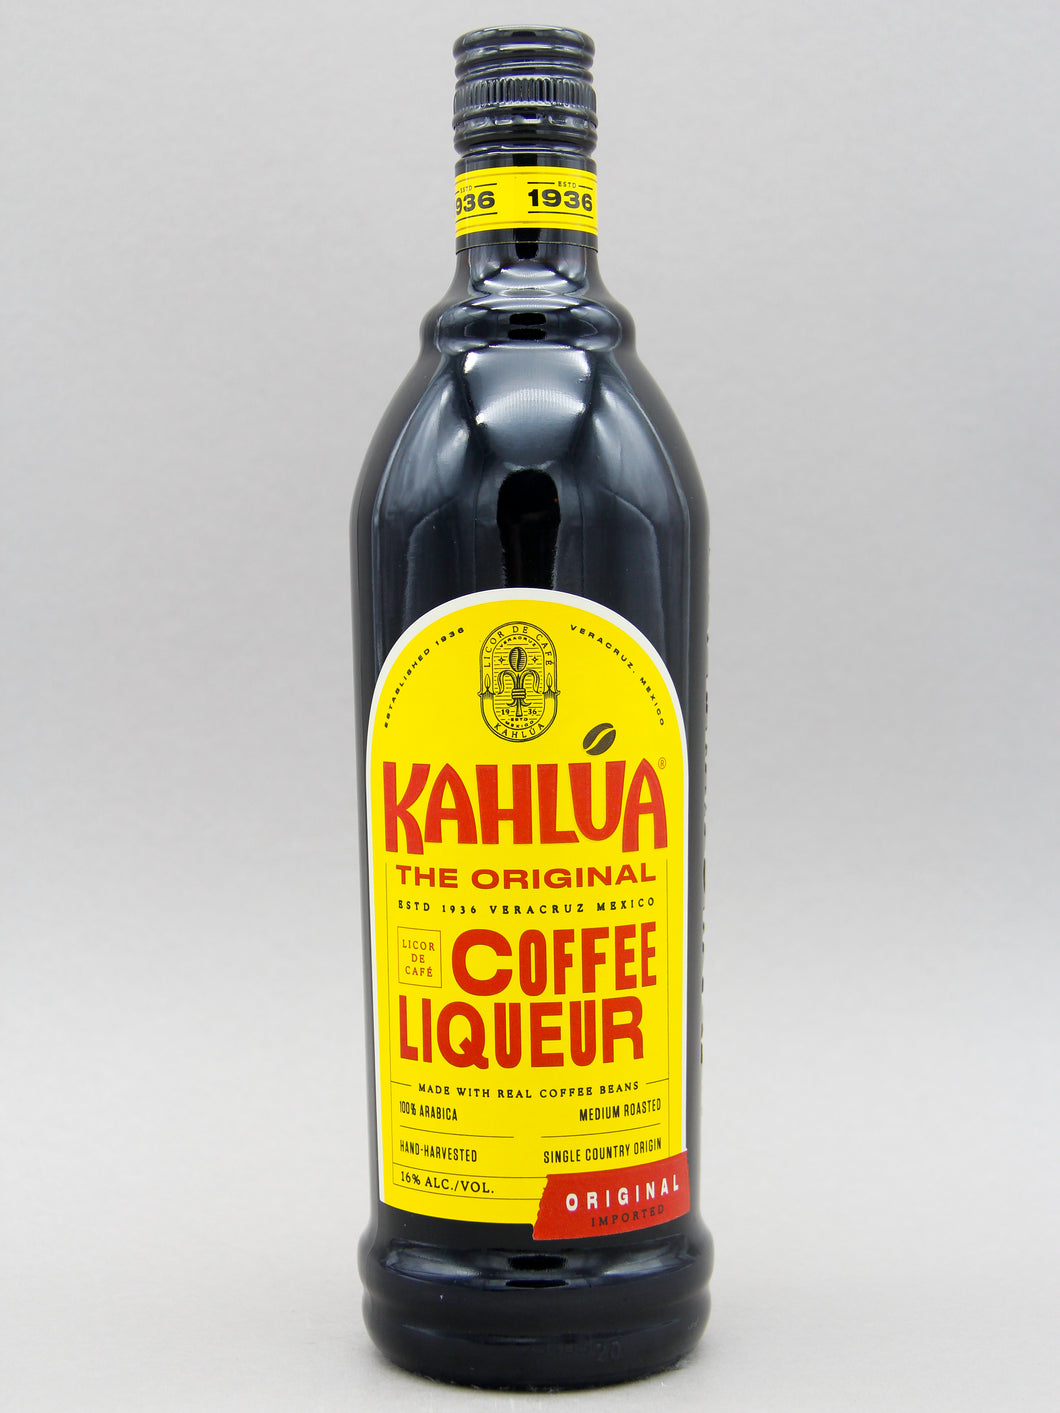 (16%, – Nørrebro Coffee Liqueur Shoppen Kahlua 70cl)